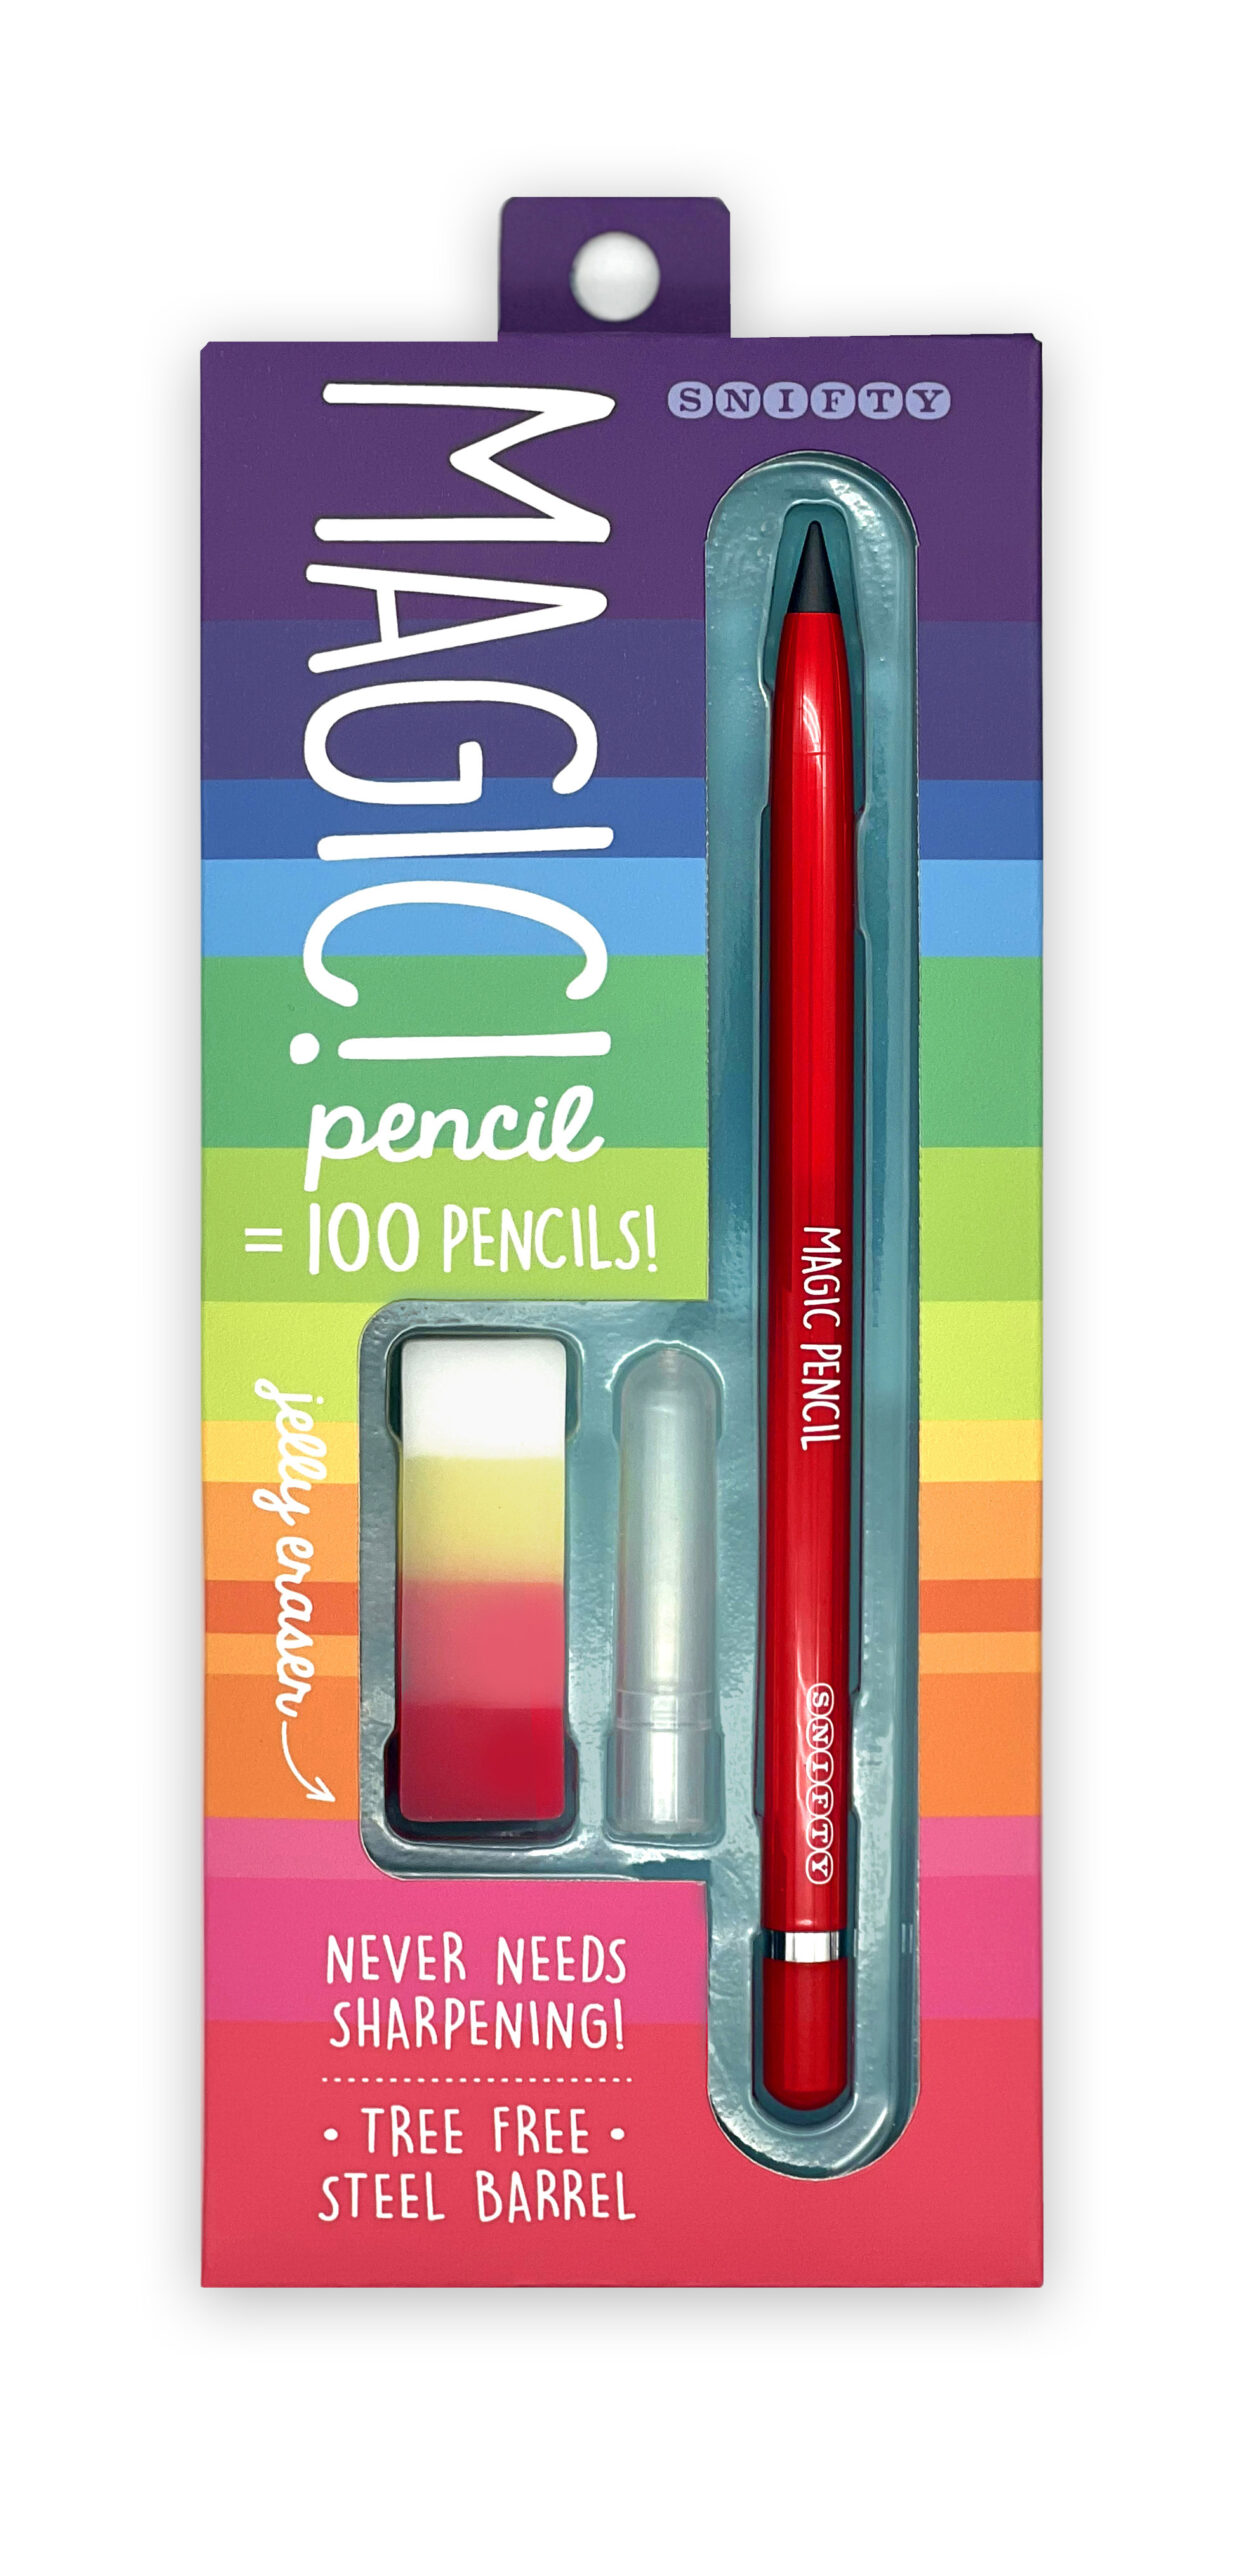 Magic Pencil - 7 Magic Inc